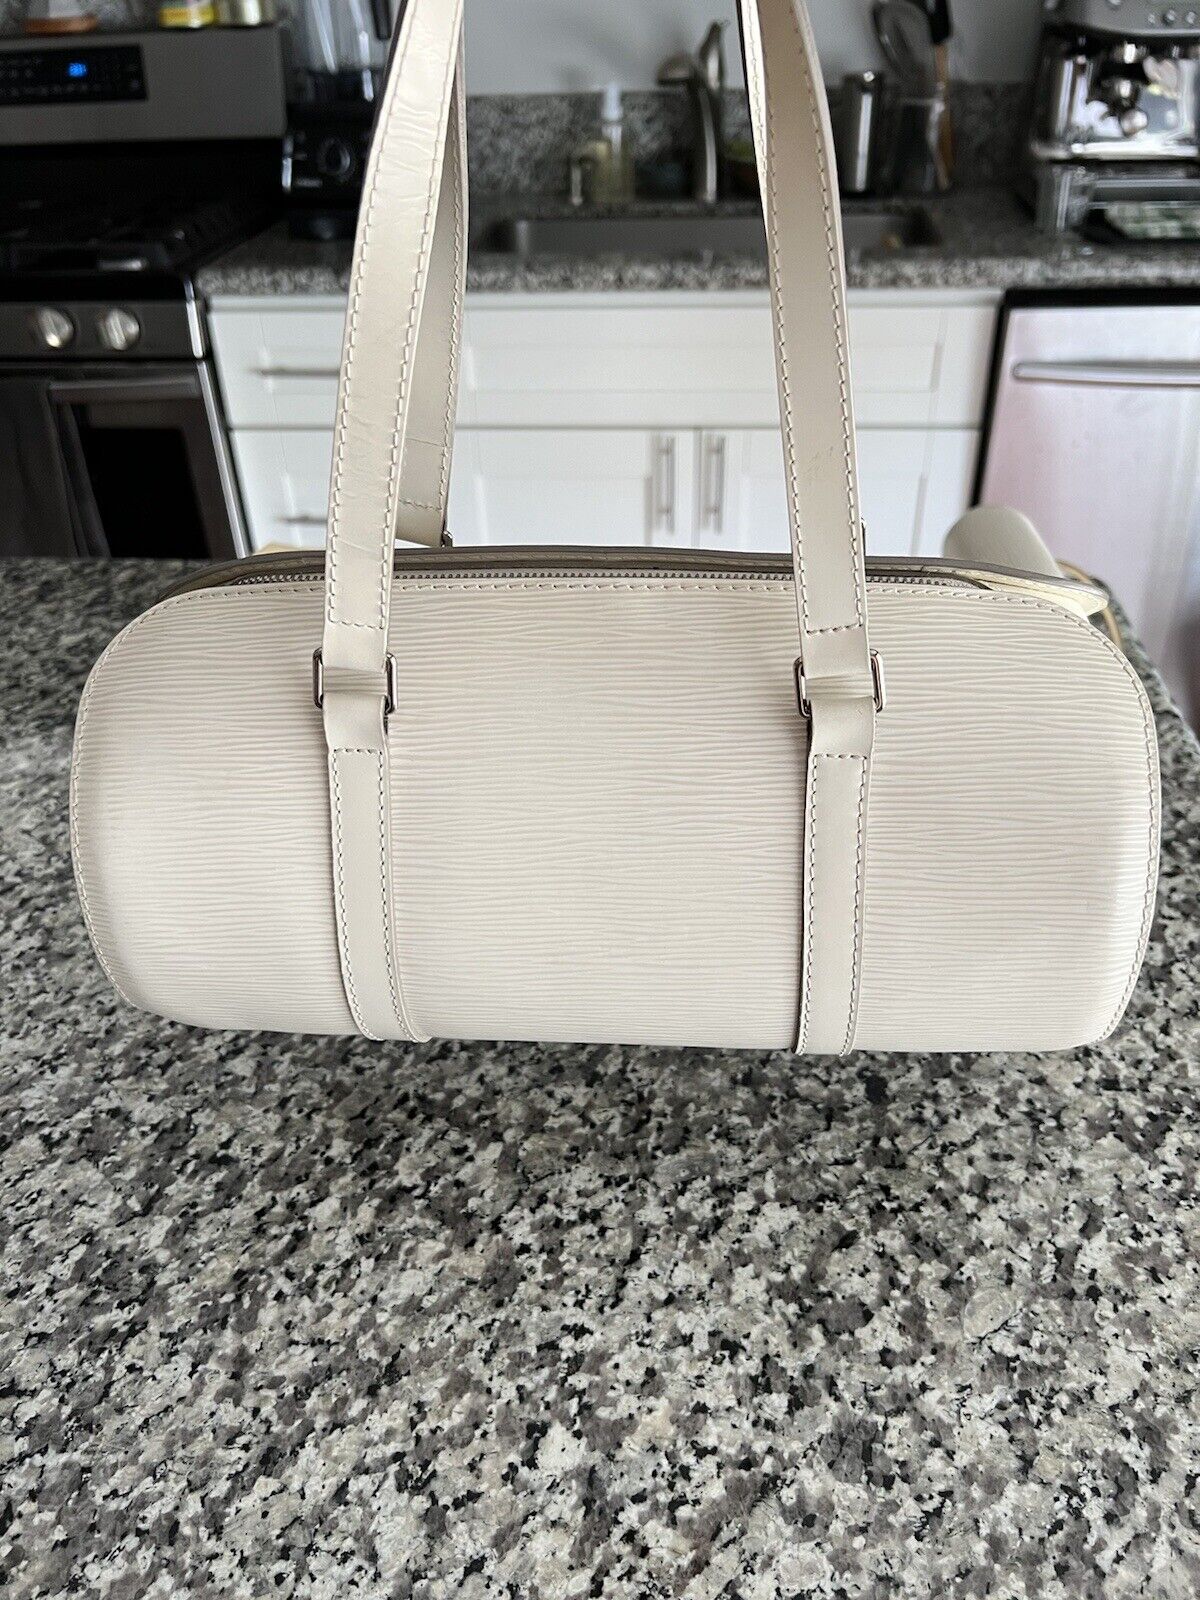 Shop Authentic Louis Vuitton Epi Leather Soufflot Handbag Online